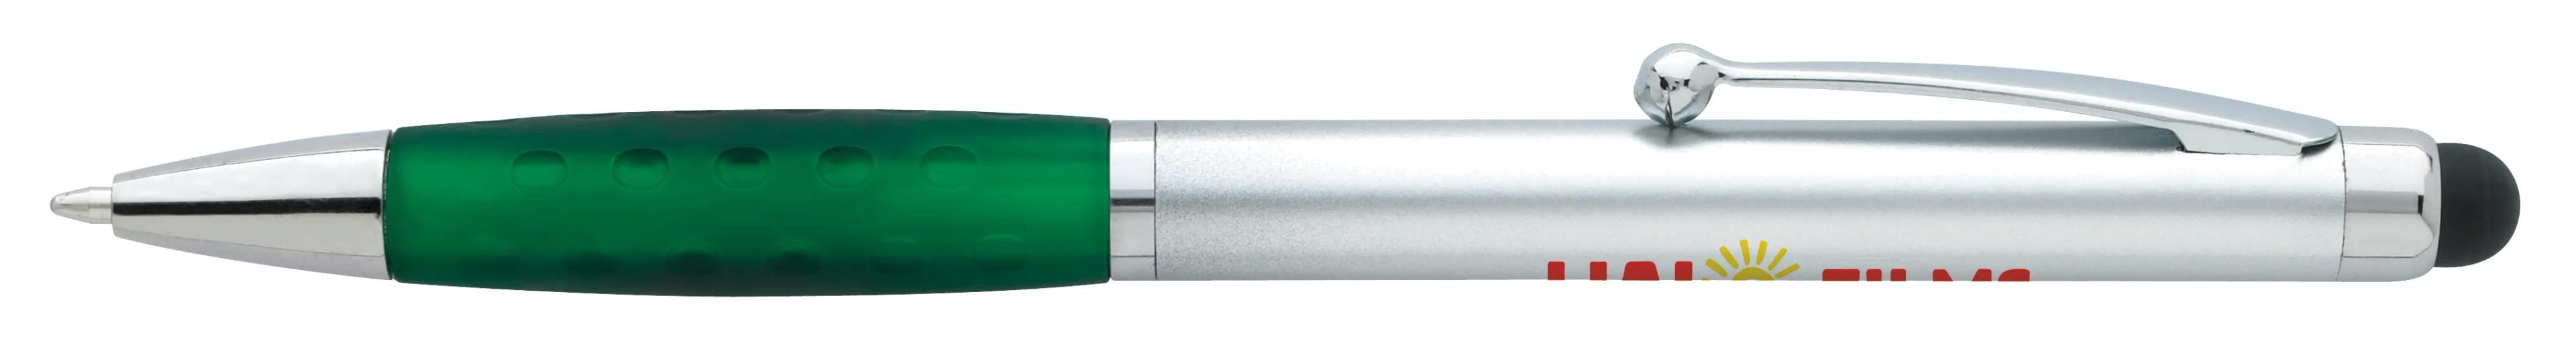 Silver Stylus Grip Pen 8 of 11